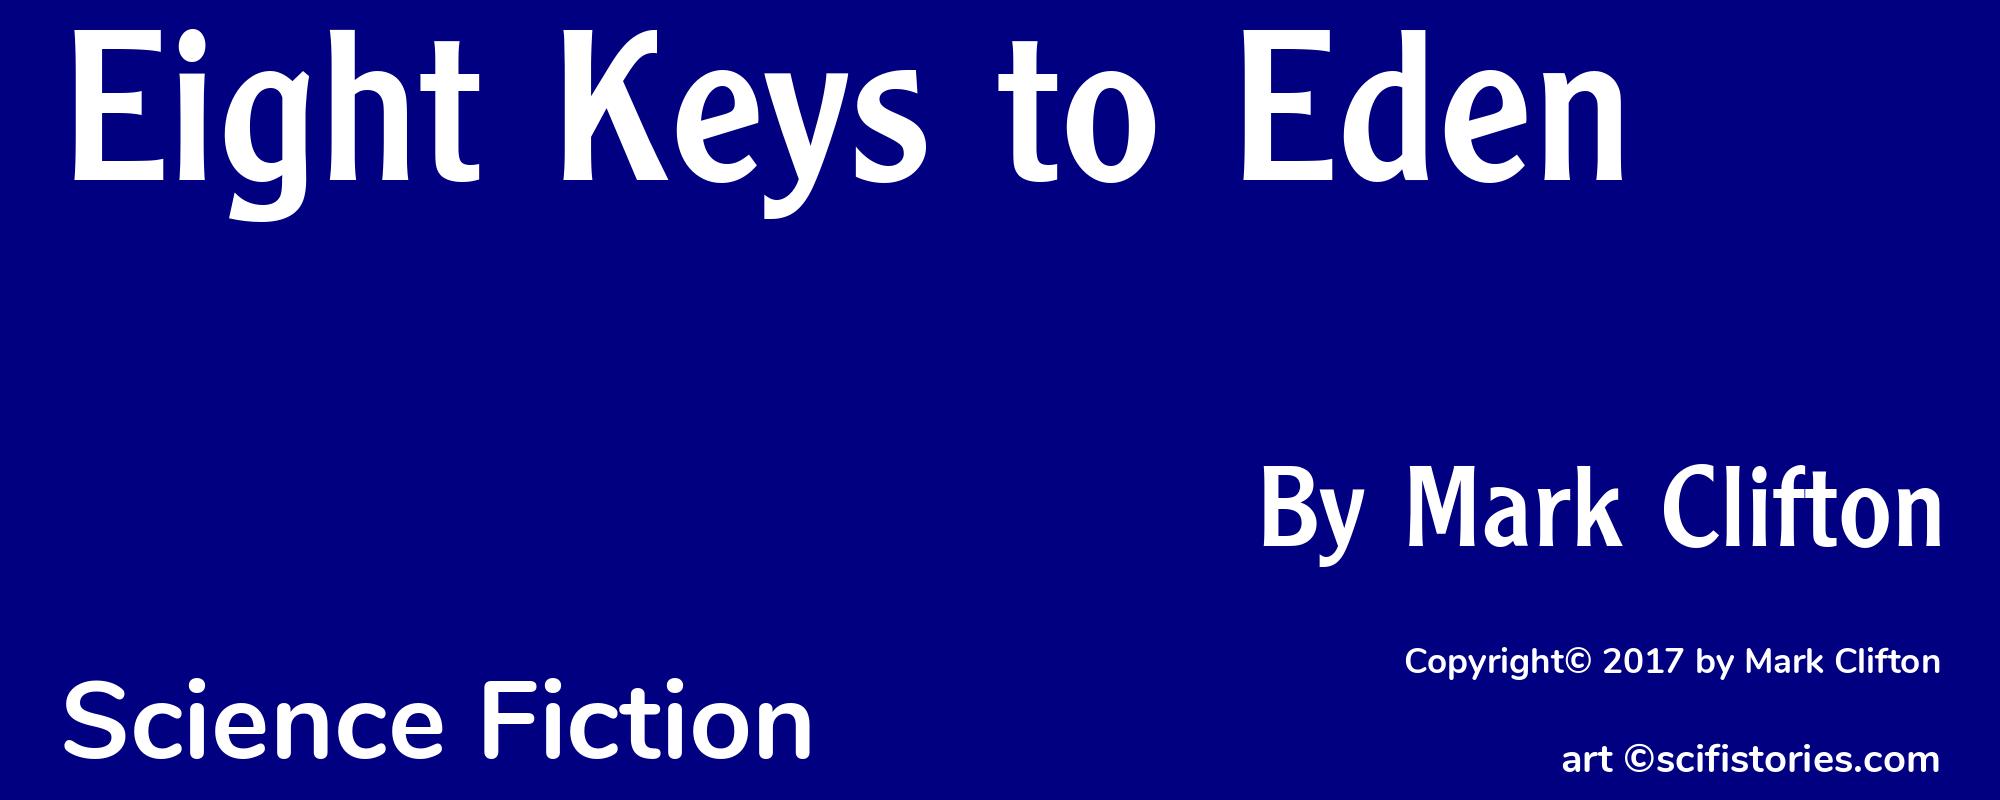 Eight Keys to Eden - Cover